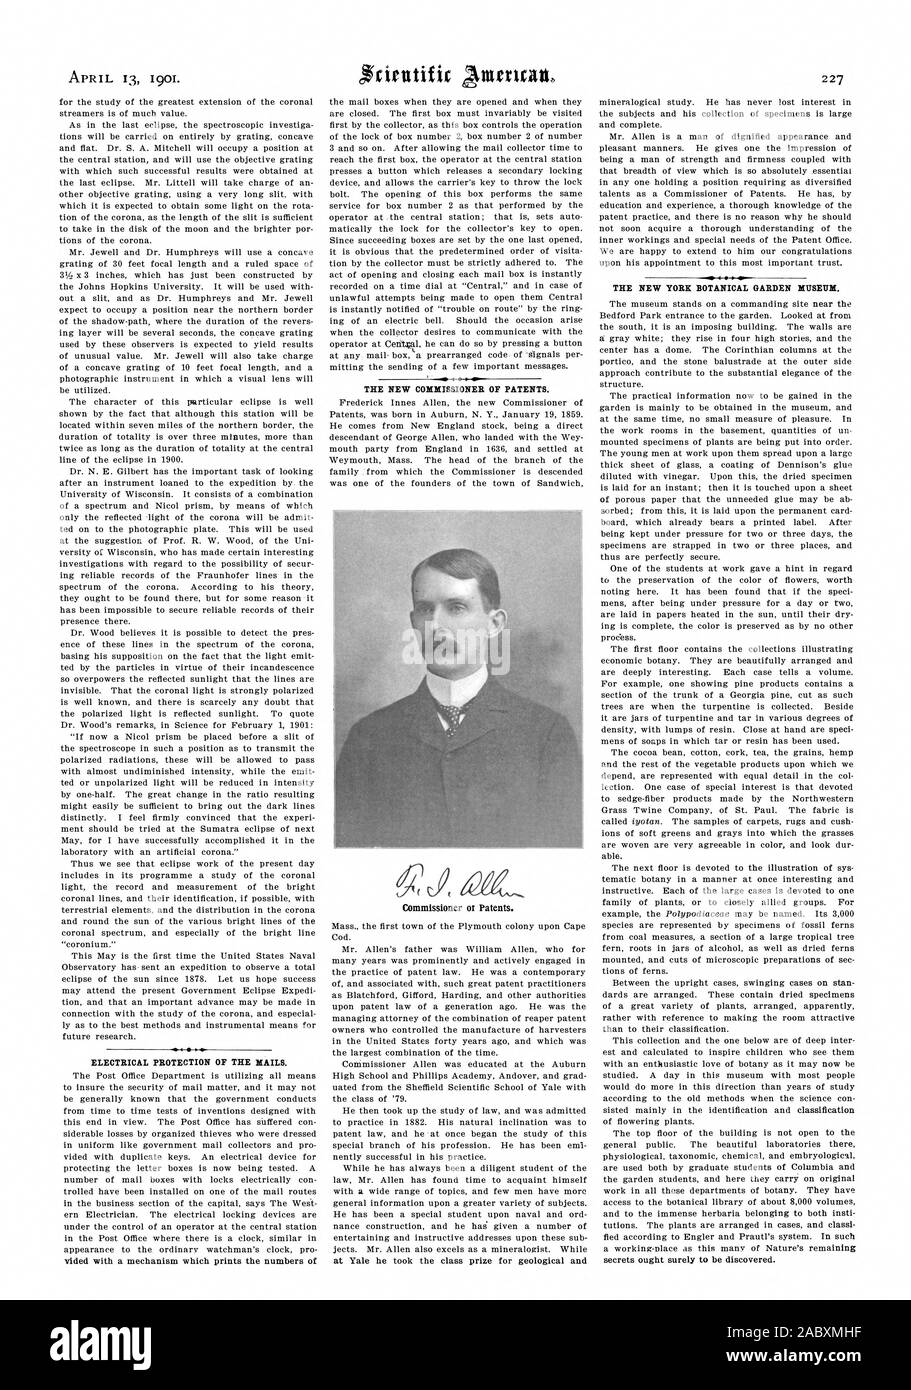 Il 13 aprile 1901. Protezione elettrica del mail. Il nuovo Commissario dei Brevetti. Signor Commissario ot brevetti. Il NEW YORK GIARDINO BOTANICO MUSEO., Scientific American, 1901-04-13 Foto Stock